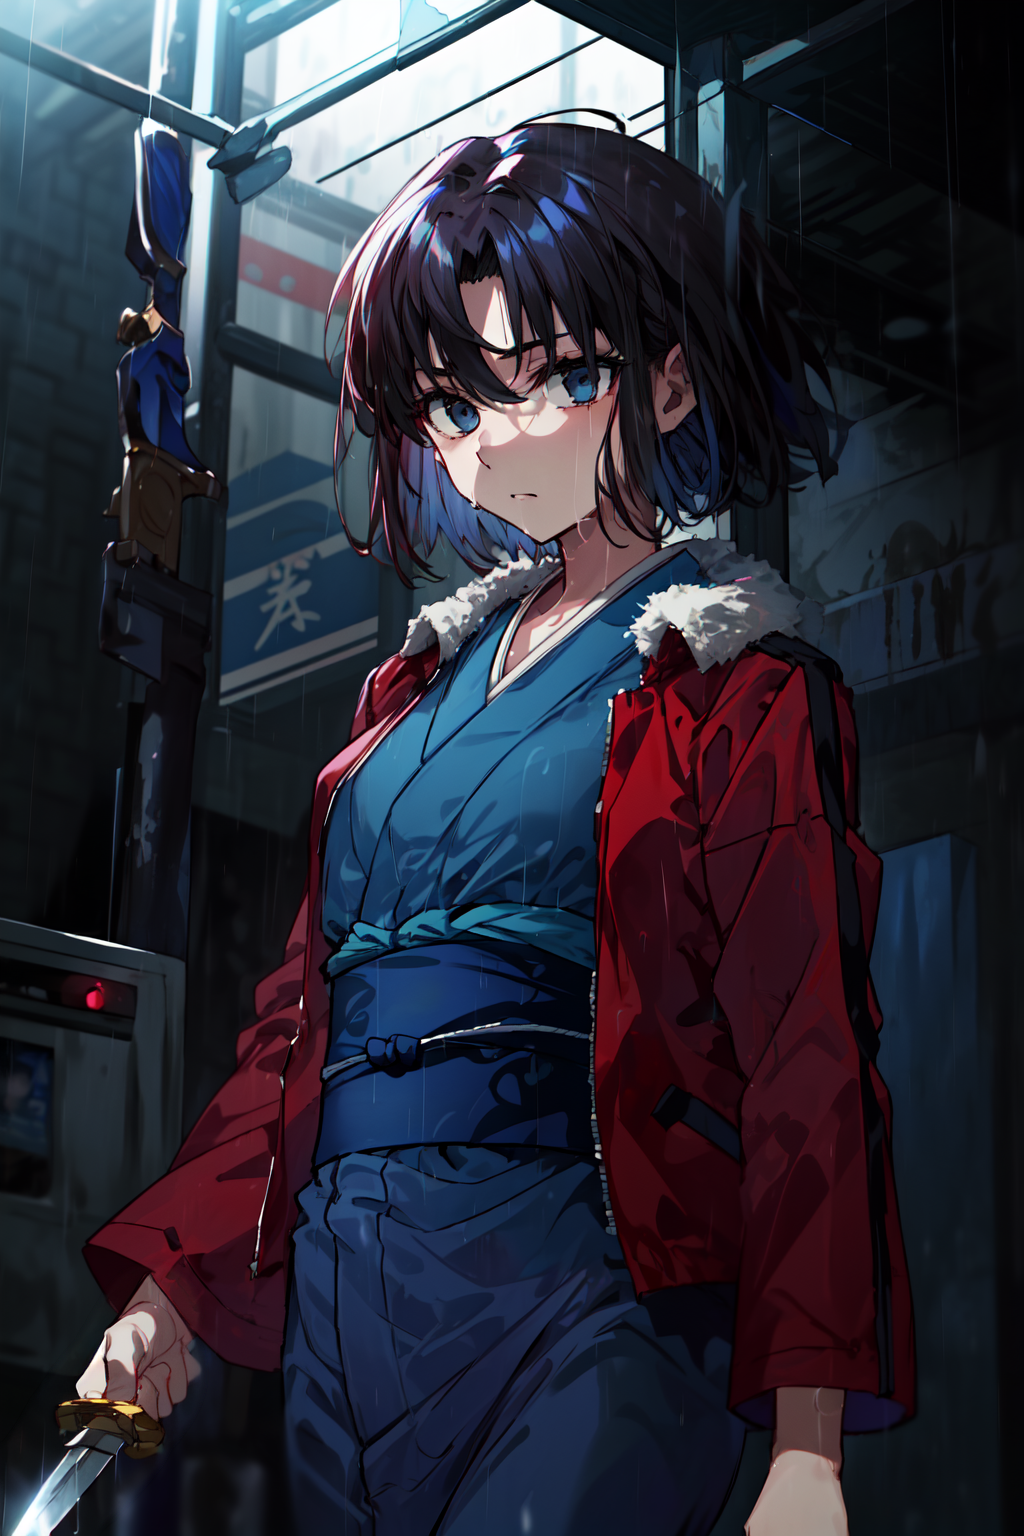 masterpiece,best quality,1girl,ryougi shiki,red jacket,obi,blue kimono,expressionless,holding knife,knife,night,rain,<lora...